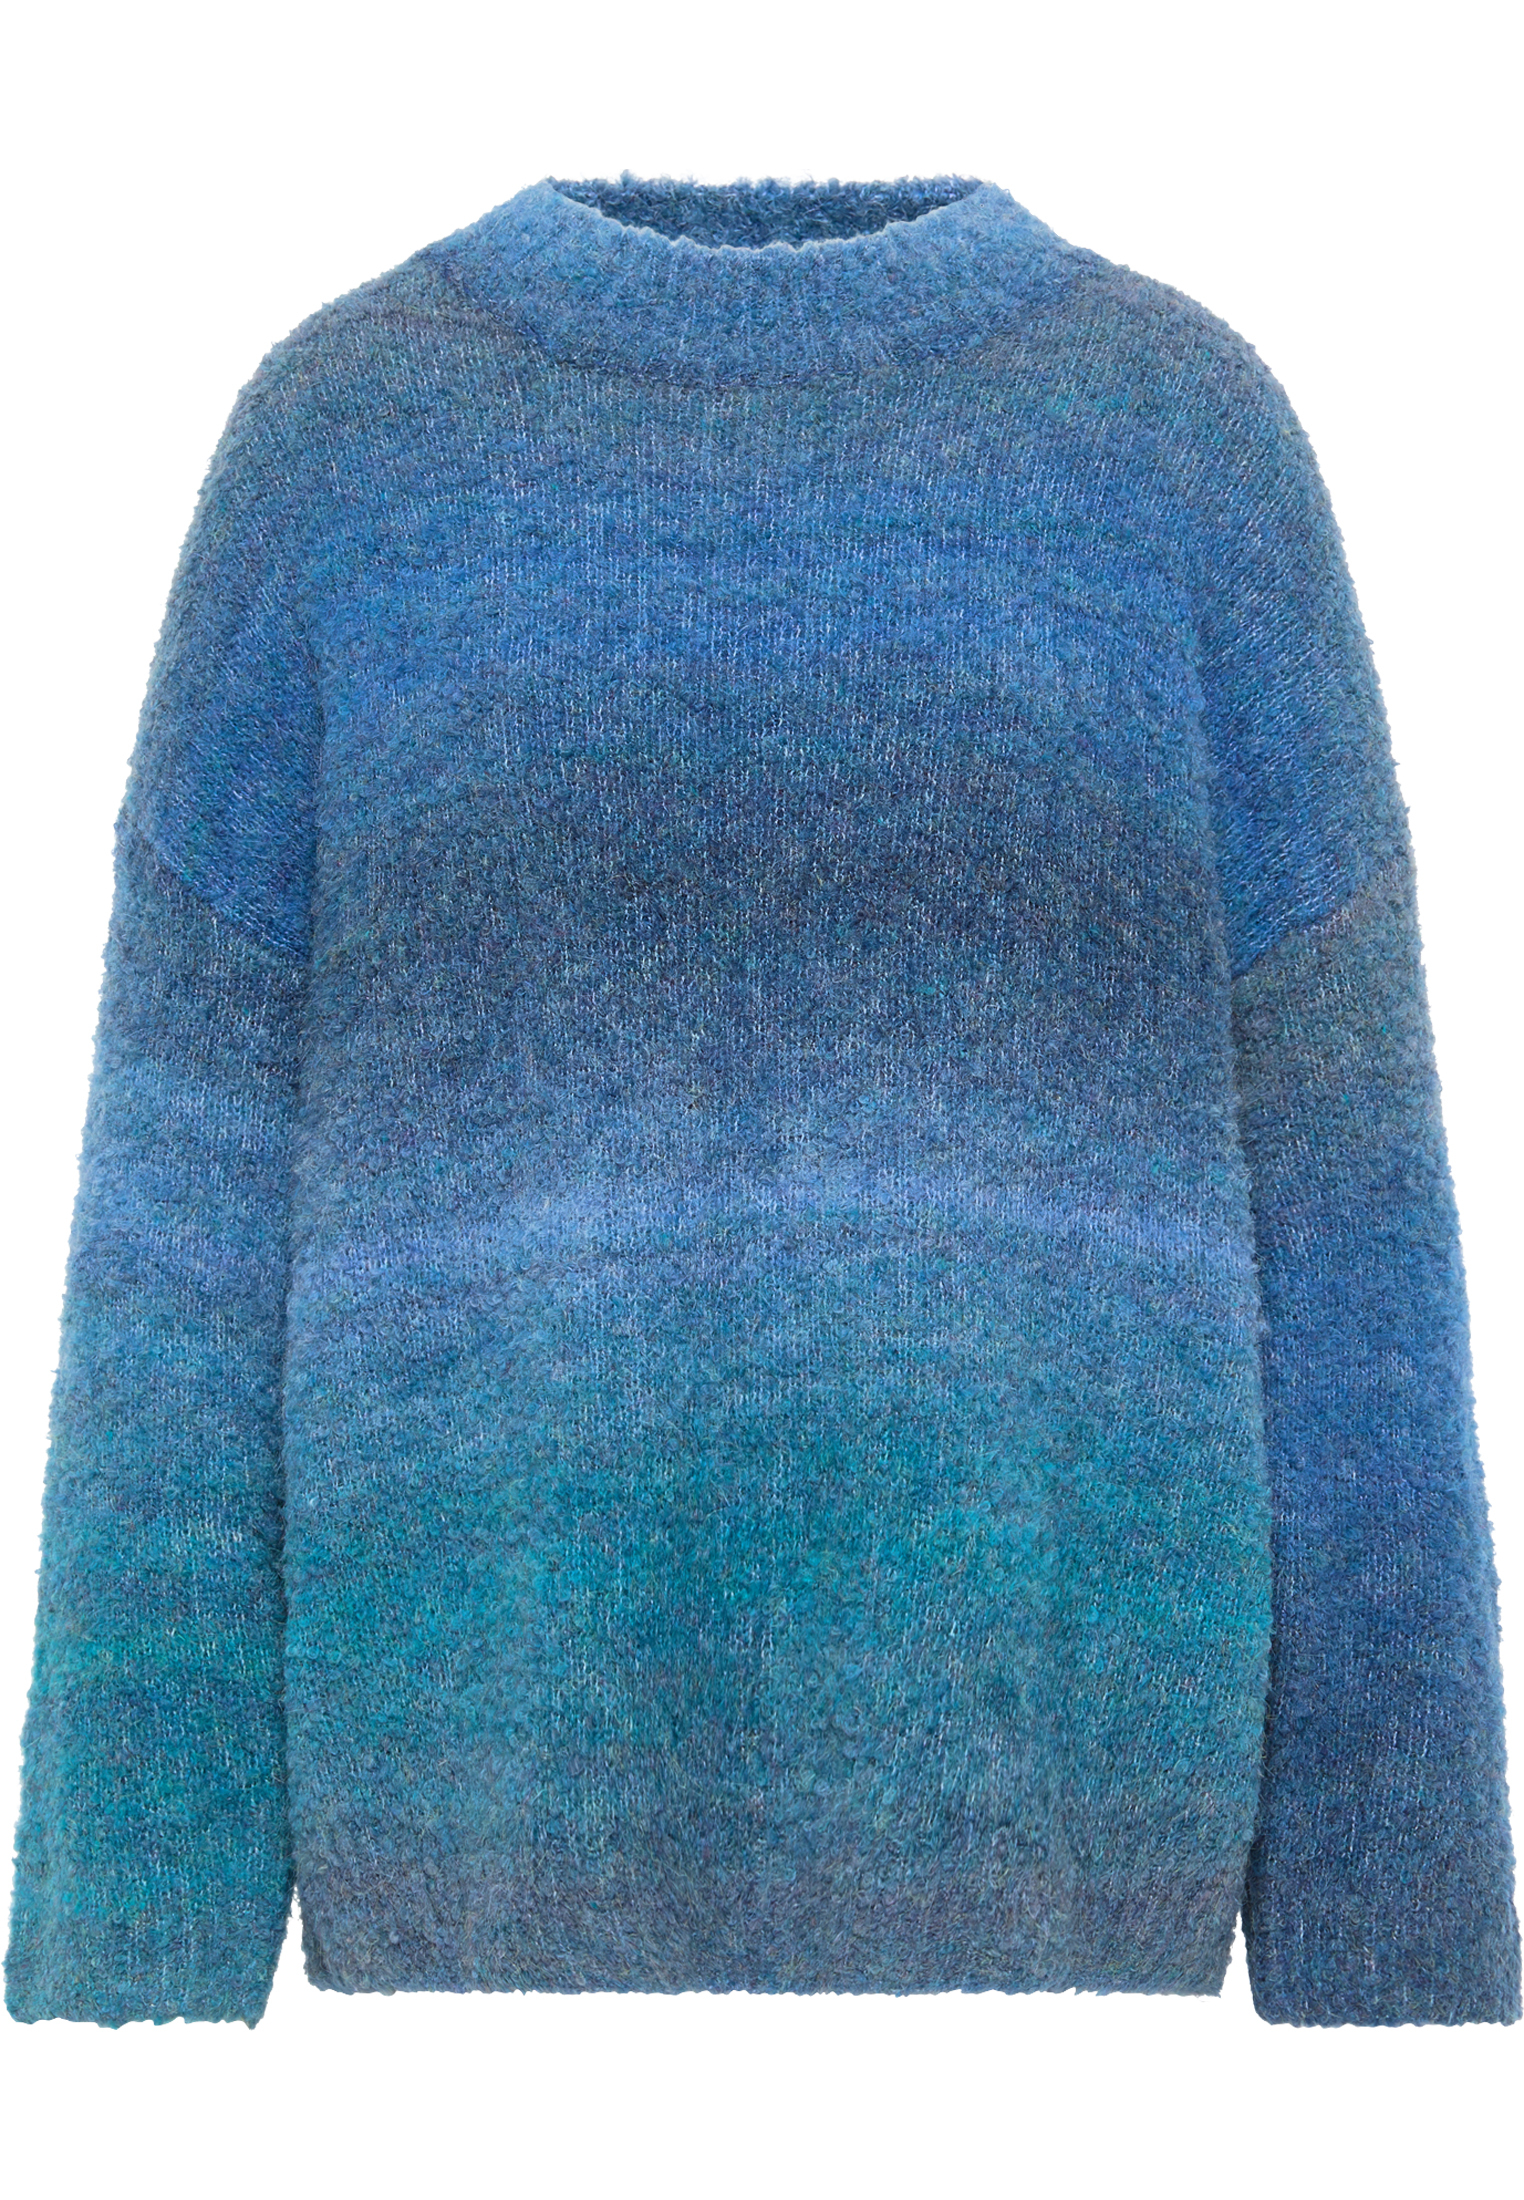 Kobiety Plus size MYMO Sweter w kolorze Królewski Błękit, Jasnoniebieski, Atramentowym 